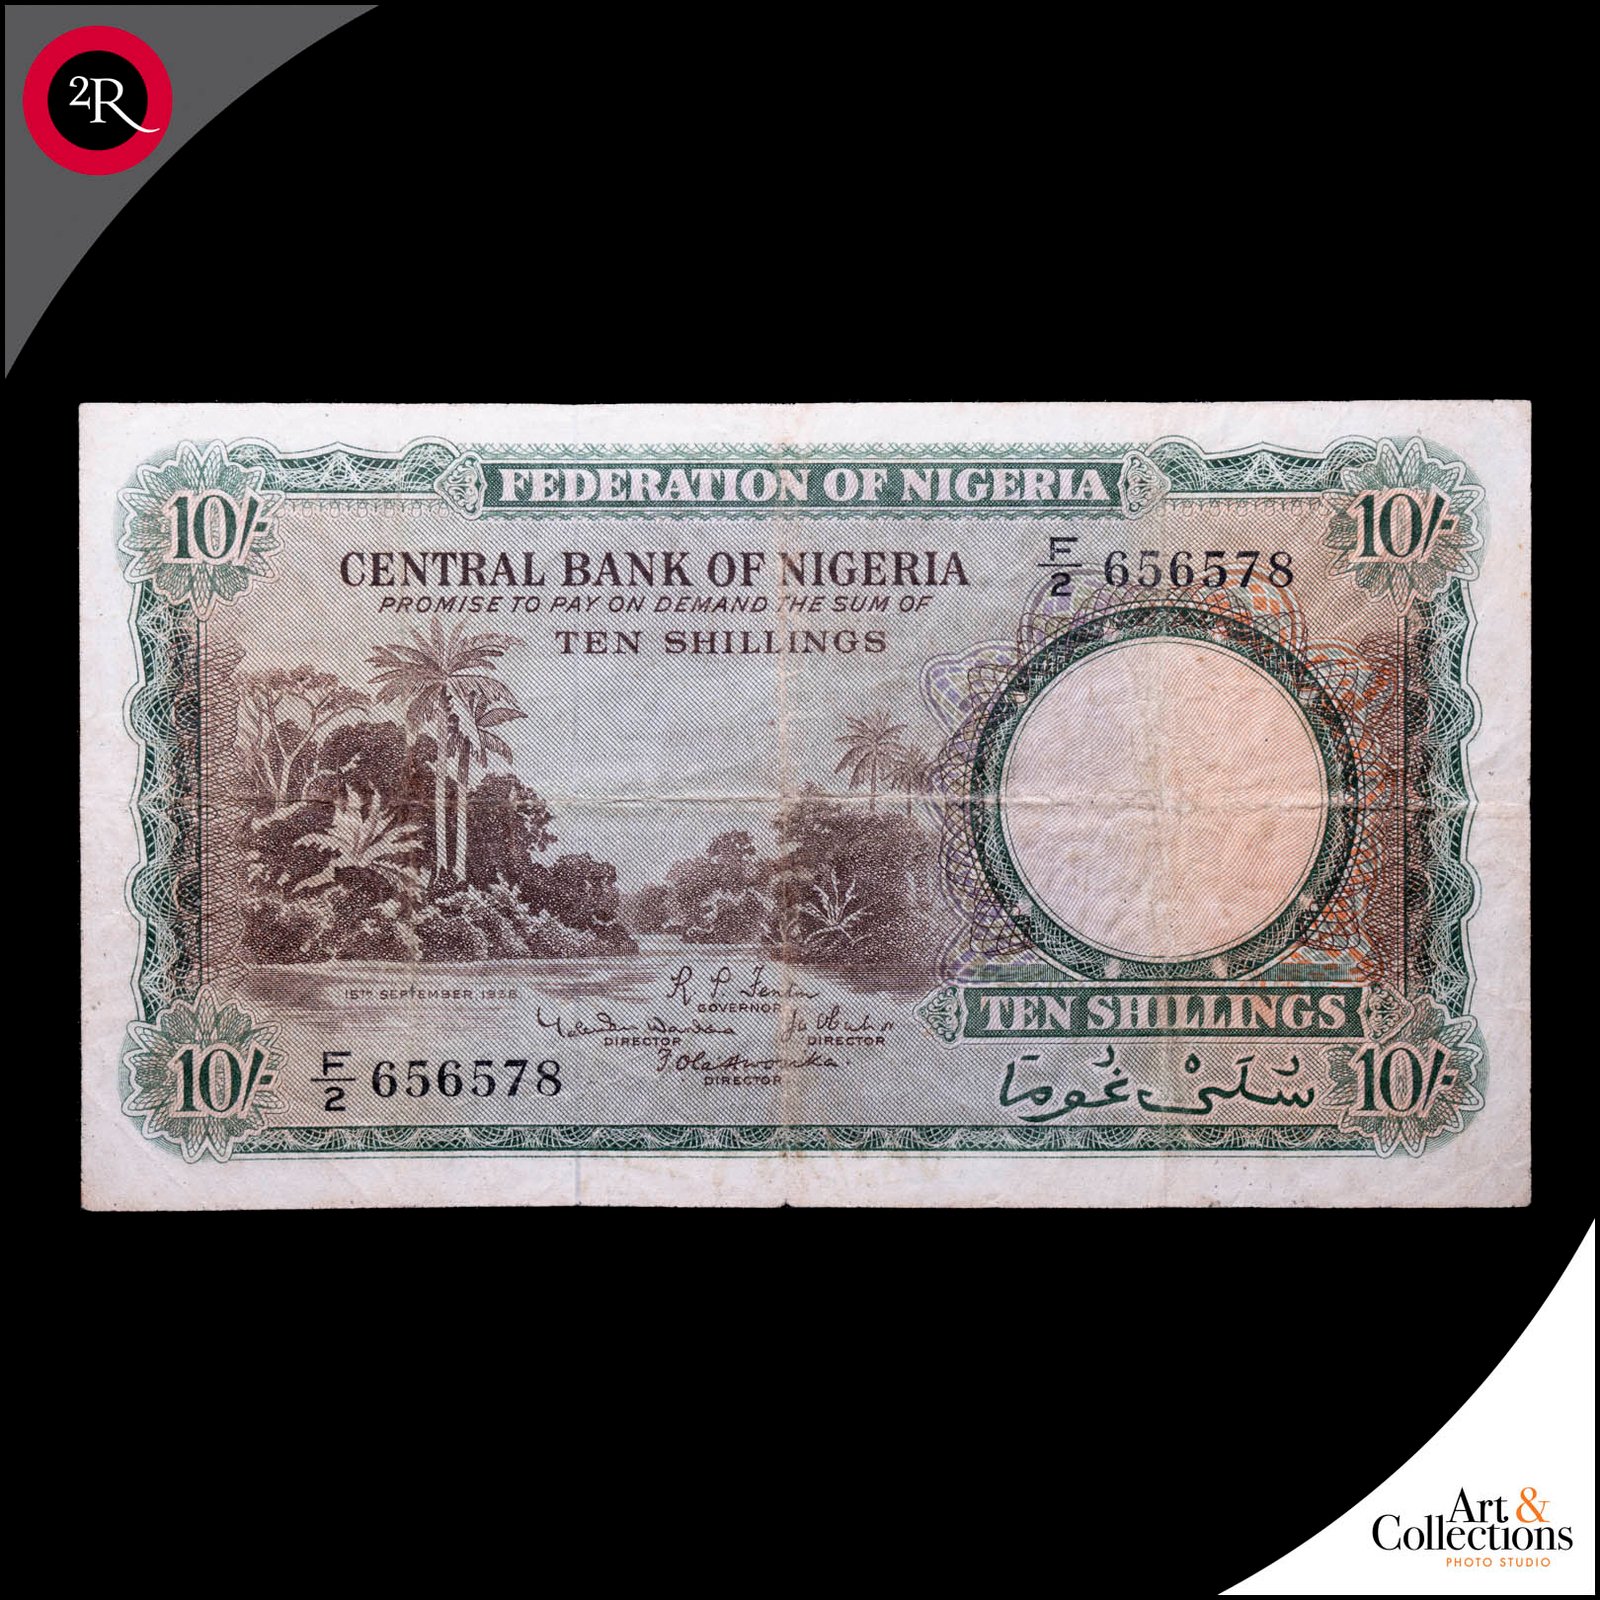 NIGERIA 1958 10 SCHILLINGS